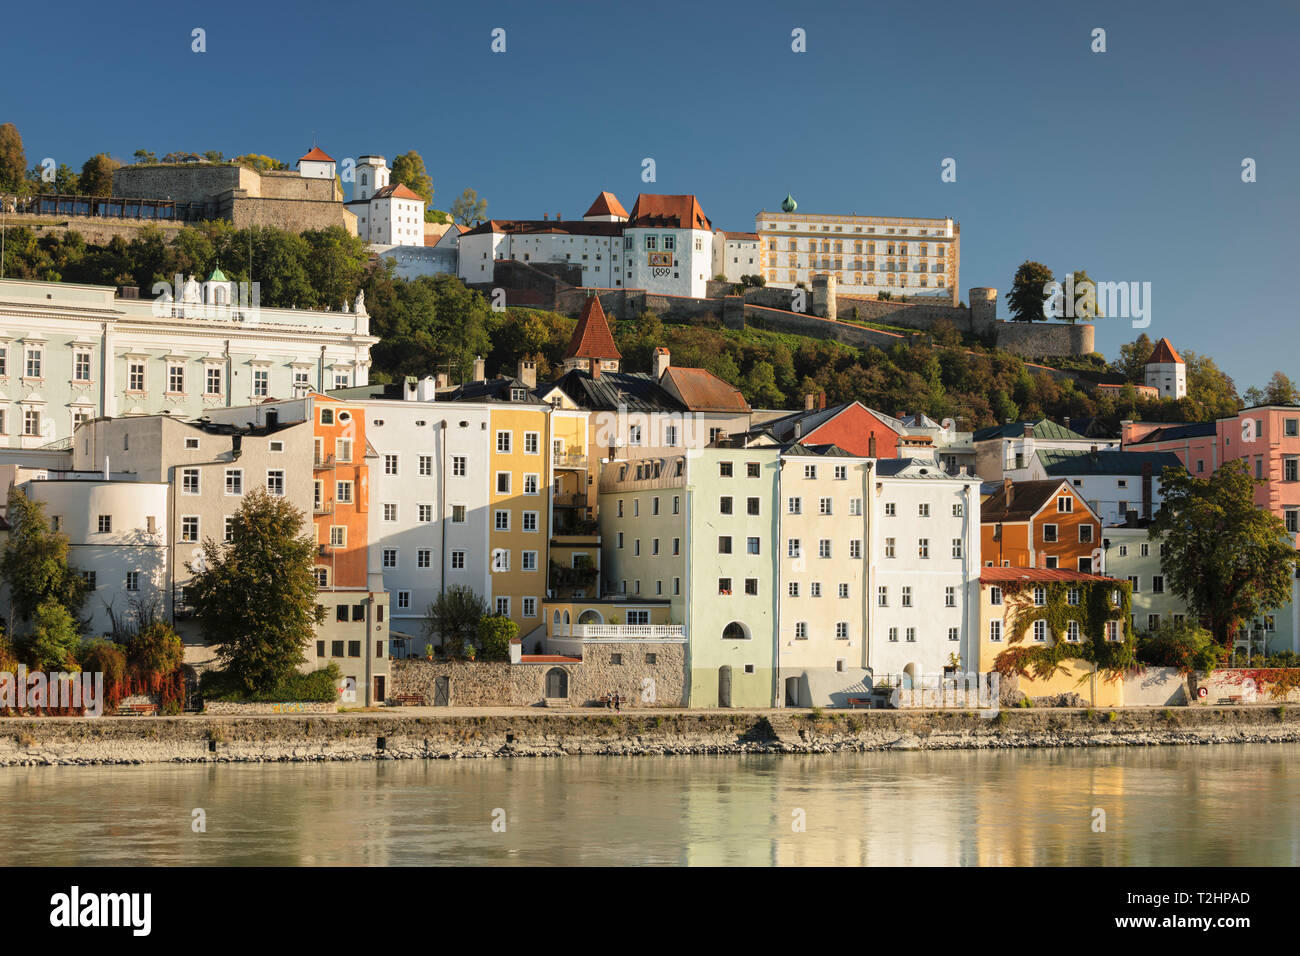 Vieille ville de Passau, Germany, Europe Banque D'Images